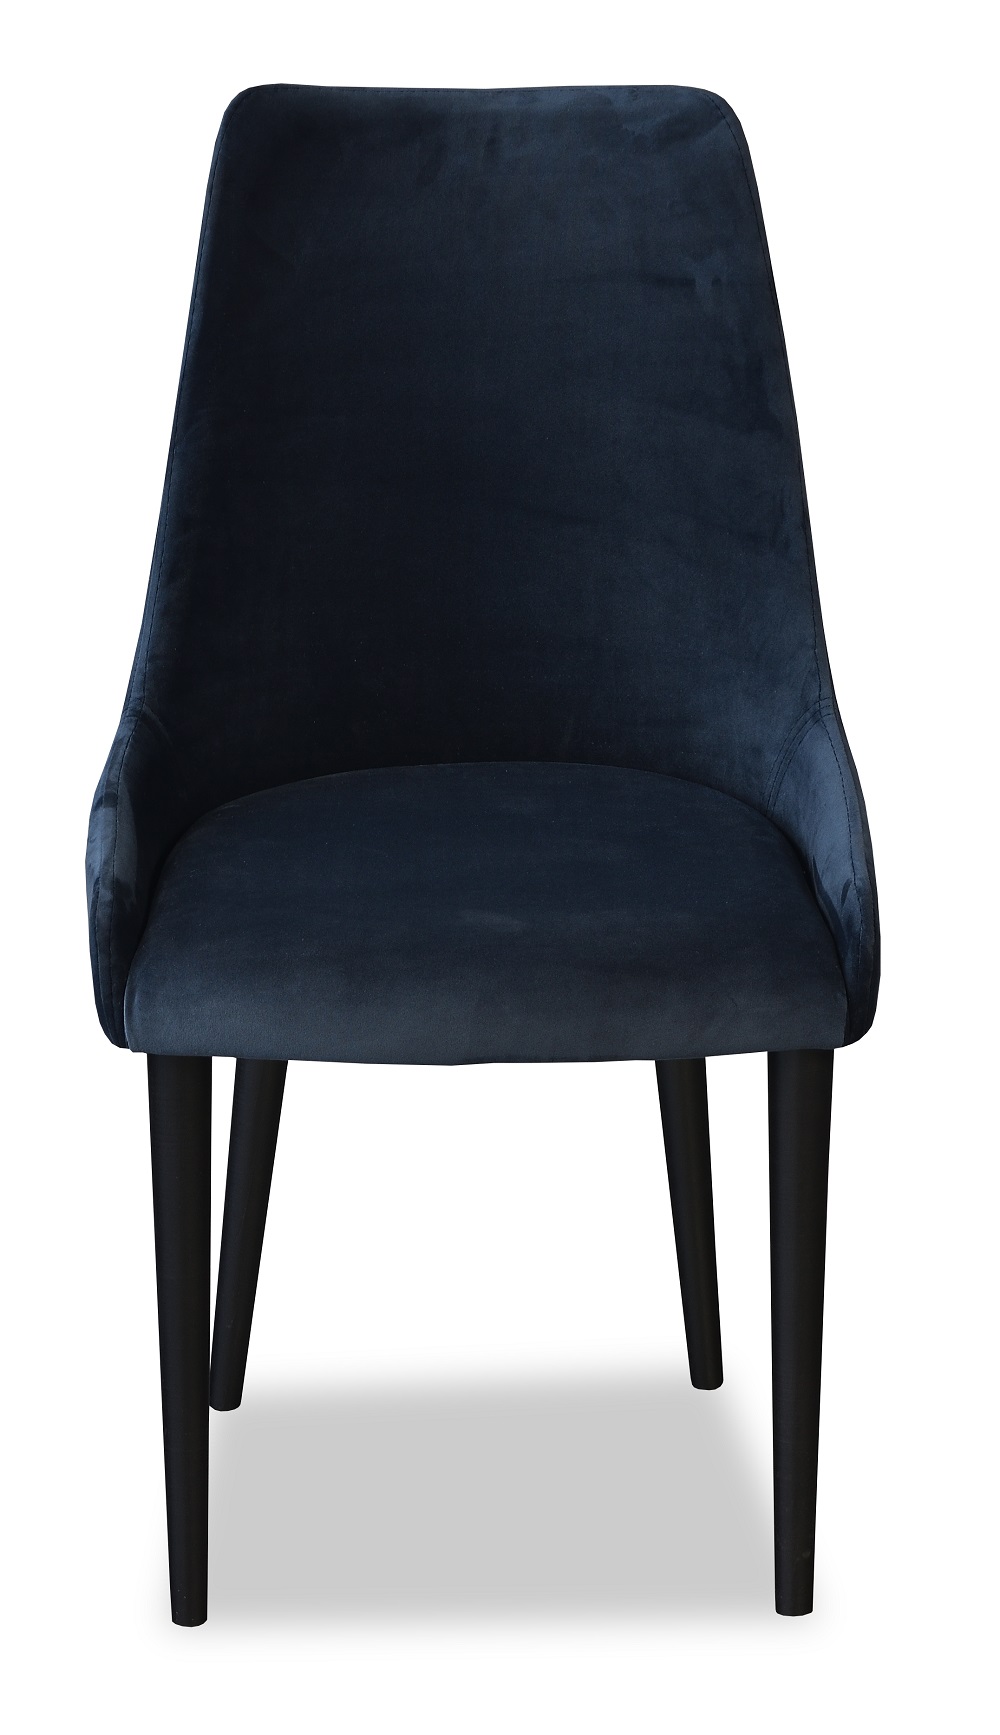 OKSI krzesło tapicerowane w stylu skandynawskim - zdjęcie produktu